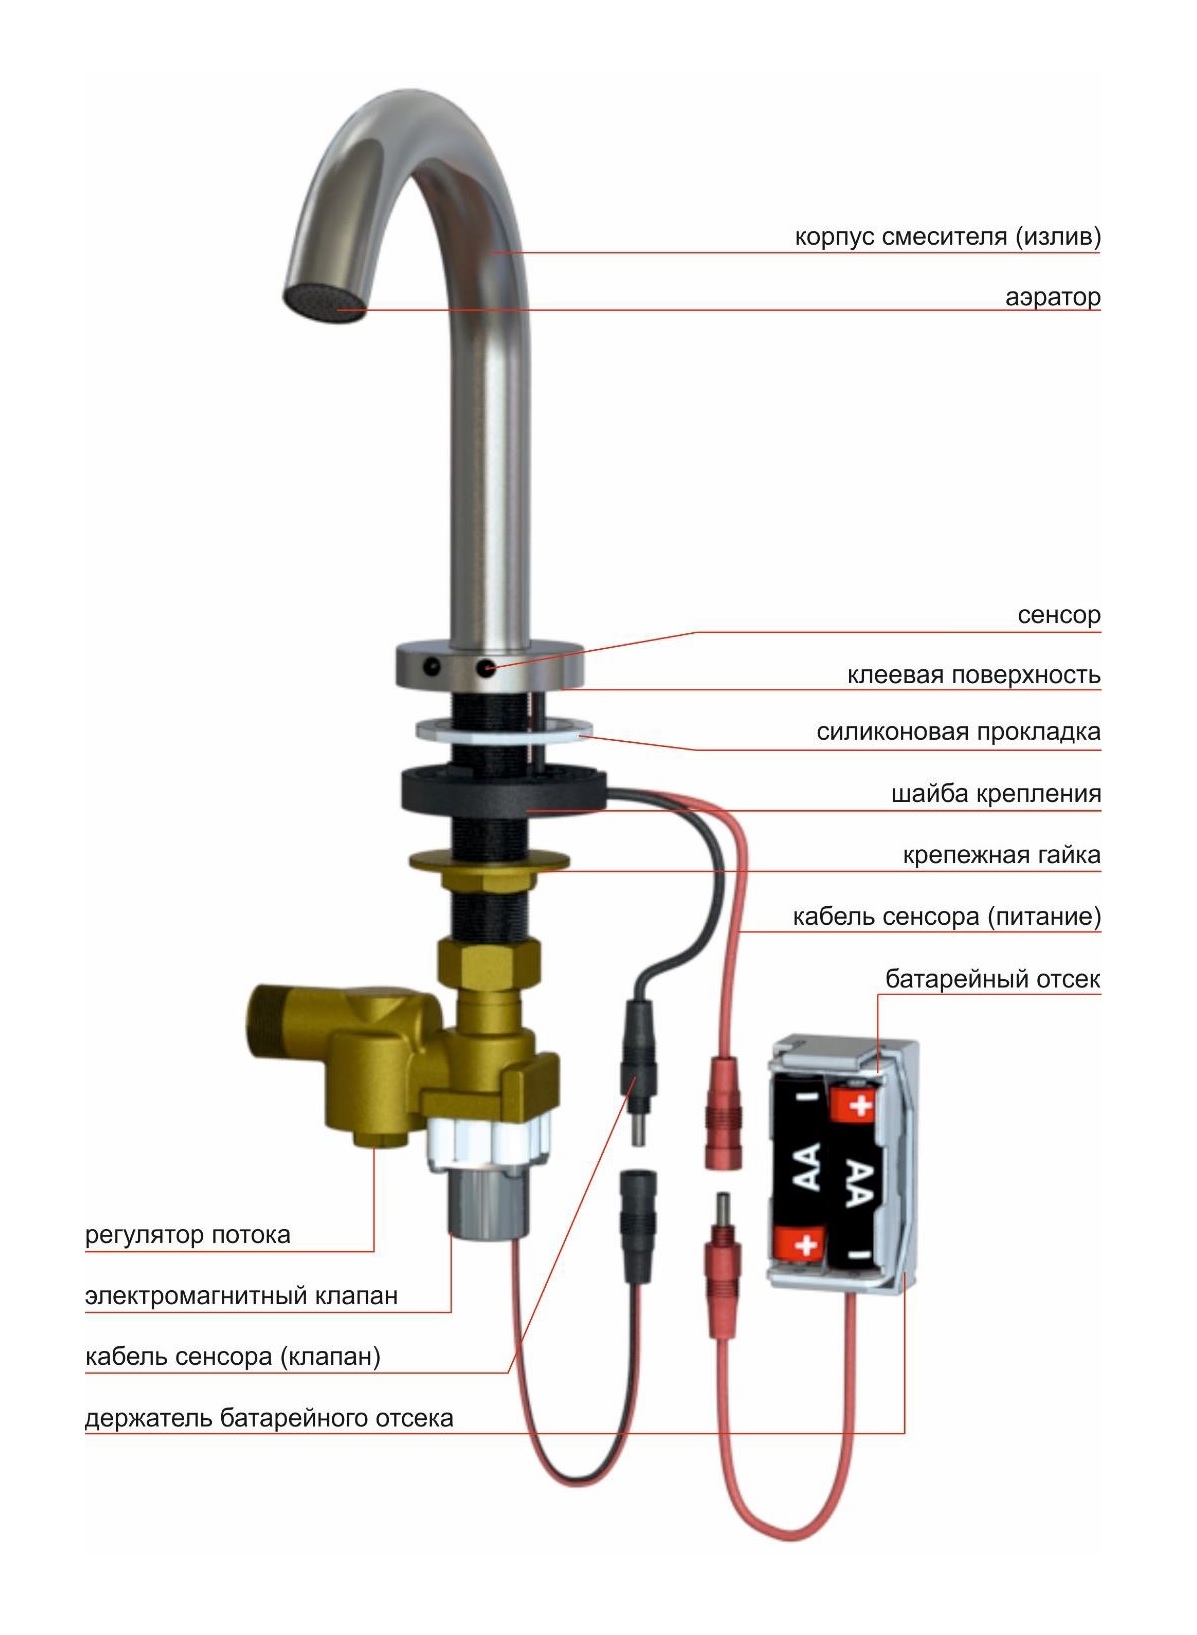 Automatic sensor faucet KR5148V-DC